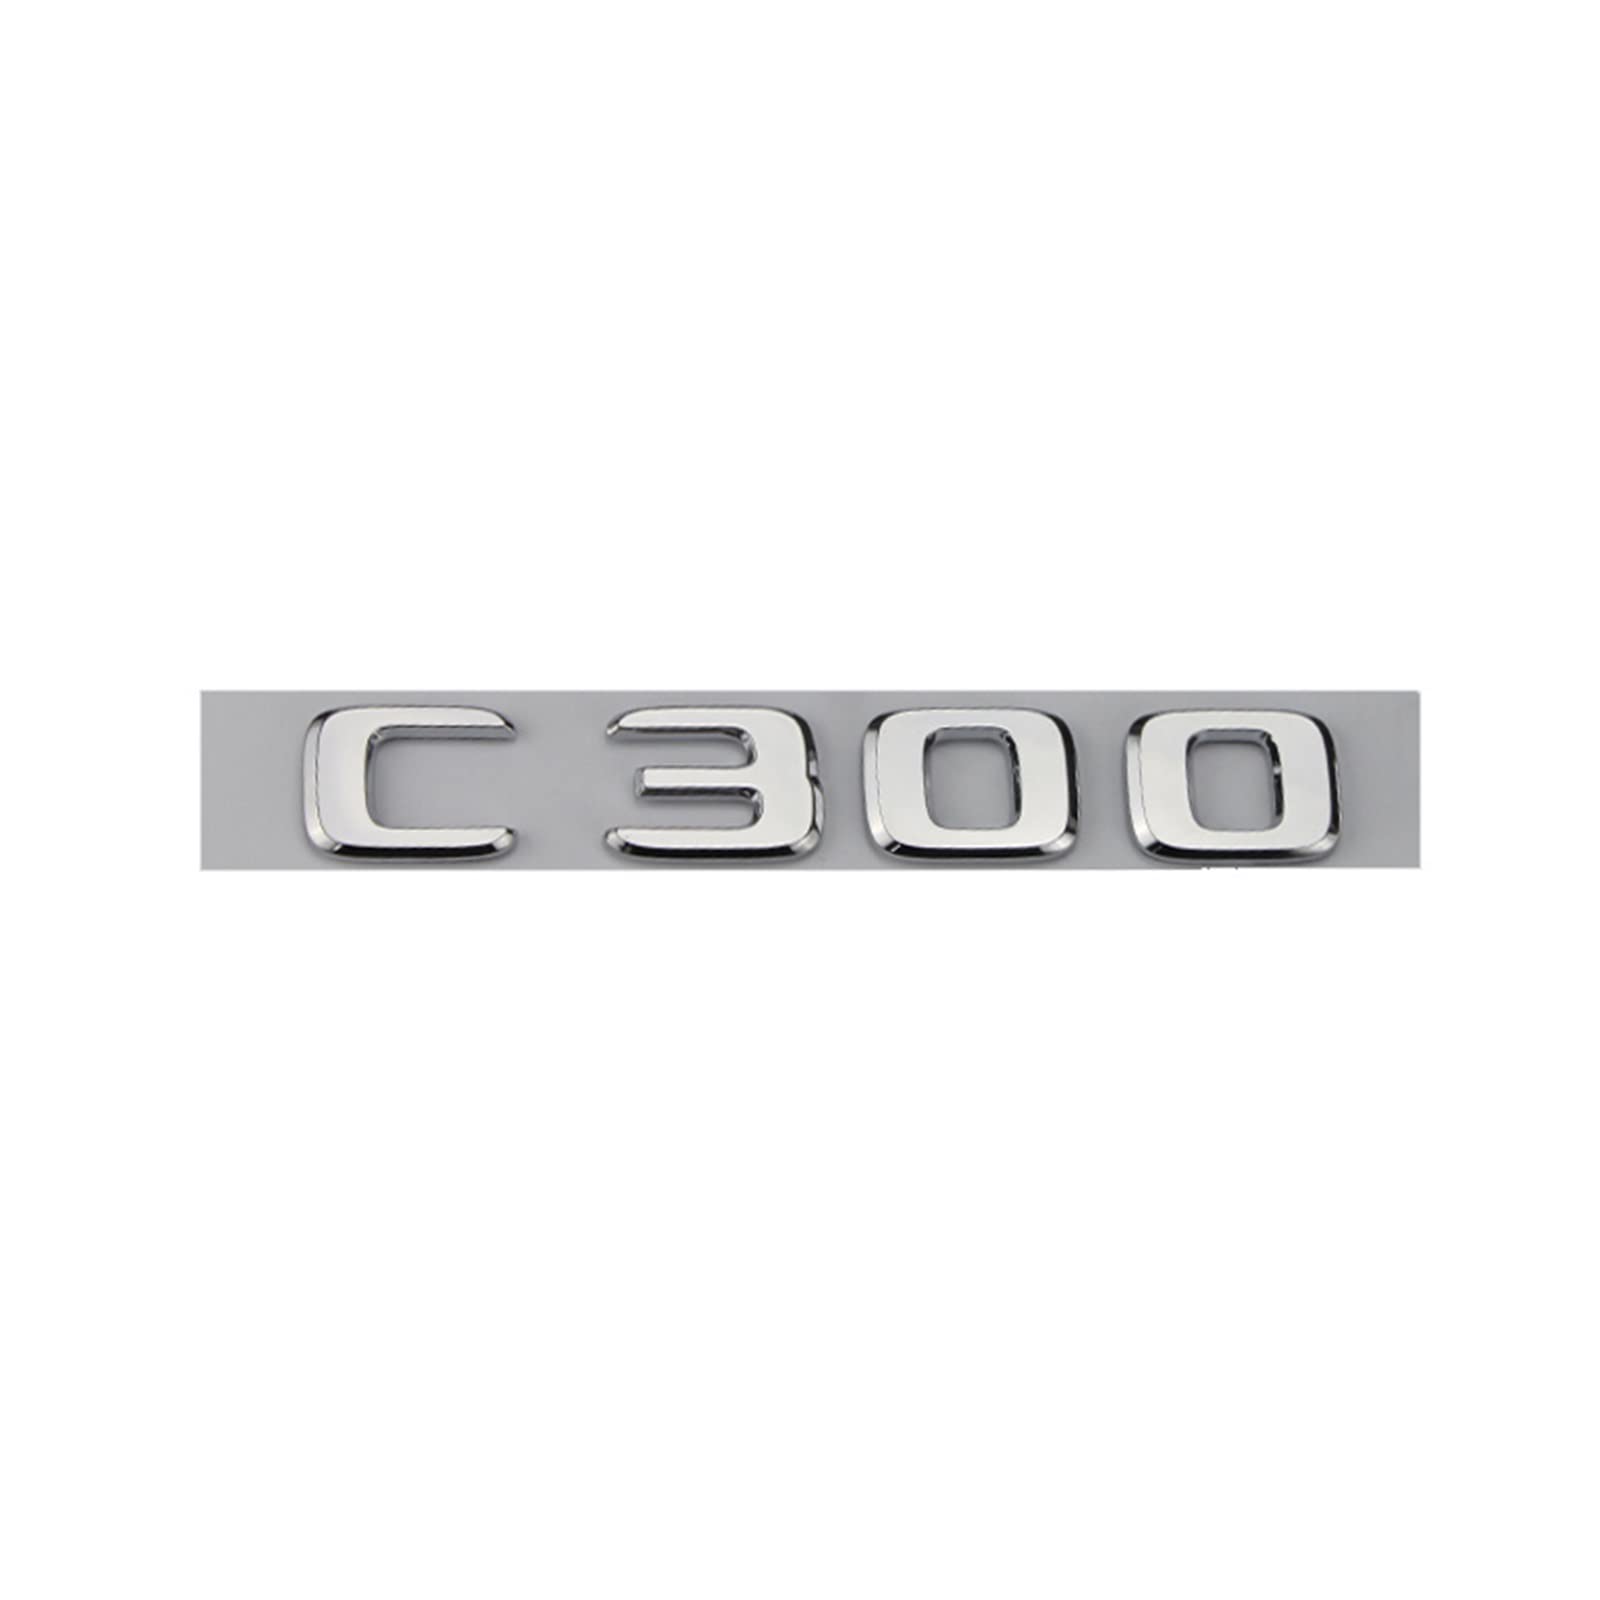 LAZIRO 3D ABS Chrom Silber C300 Auto Kofferraum Aufkleber Typenschild Emblem Aufkleber Passend for Mercedes AMG W205 W204 W203 C Klasse Zubehör (Color : Chrome Silver) von LAZIRO